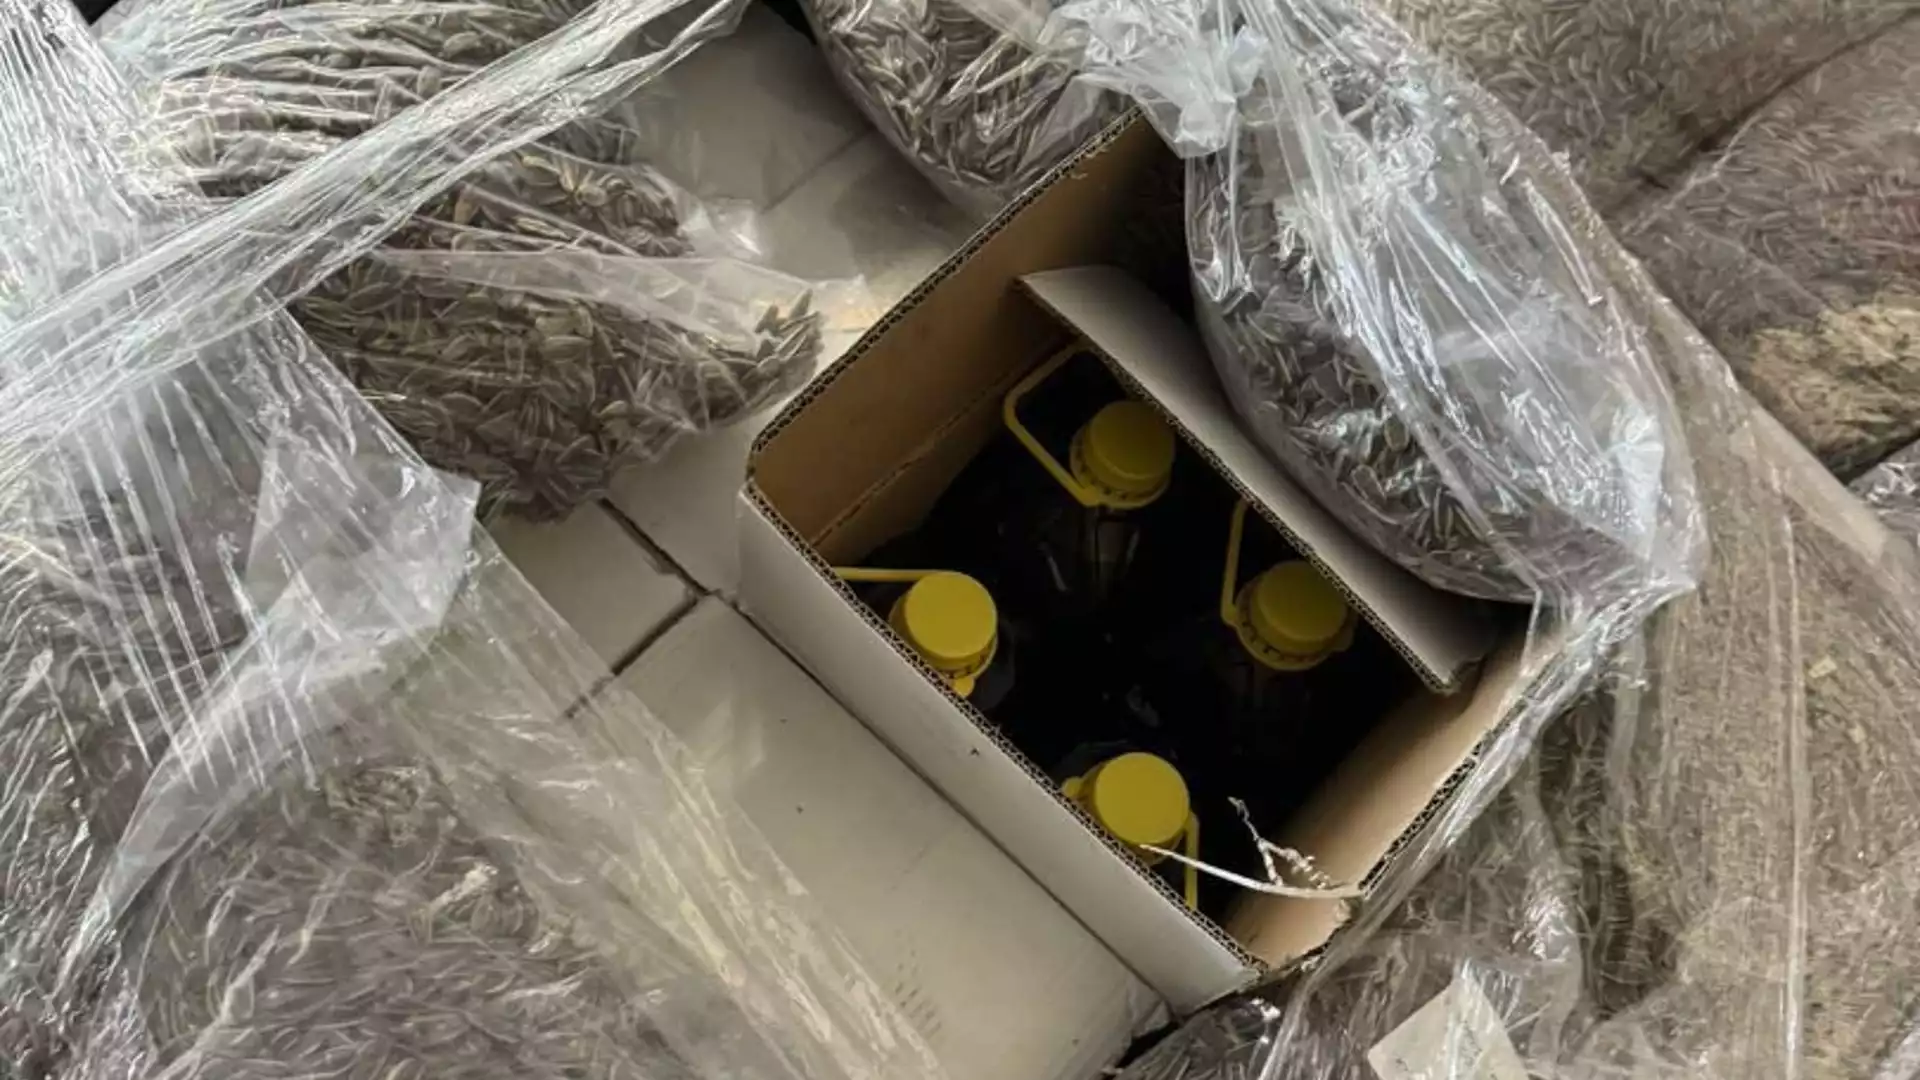 Задържаха над 3000 литра контрабанден зехтин на границата с Турция